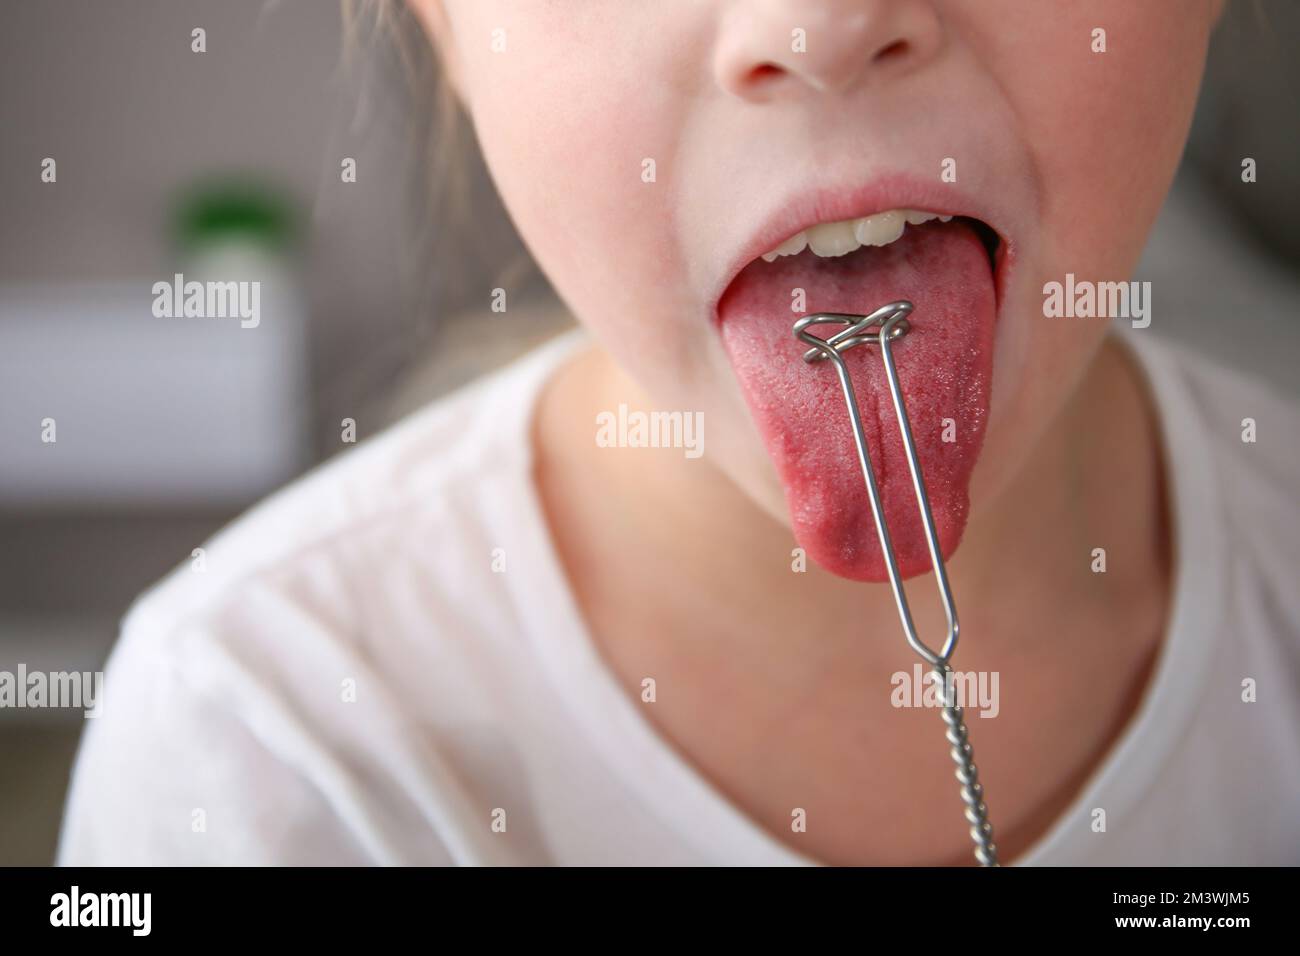 Al bambino viene somministrato un massaggio della lingua con una sonda per la terapia vocale. Foto Stock